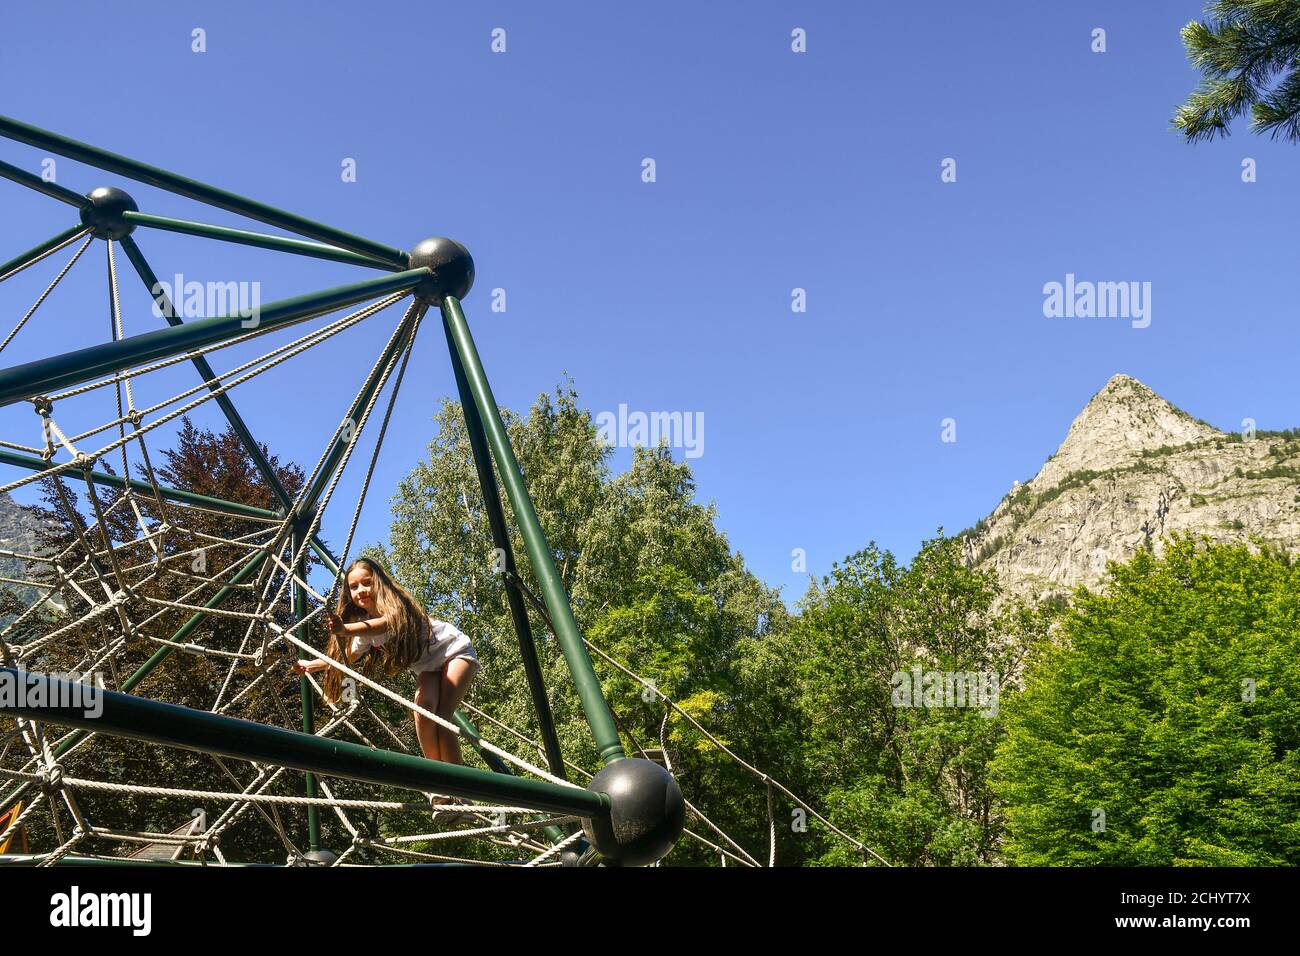 Ein kleines Mädchen (10 J.o.), das im Sommer auf einem Spielplatz mit dem Mont Chetif im Hintergrund auf einer Spielanlage klettert, Courmayeur, Aosta, Italien Stockfoto